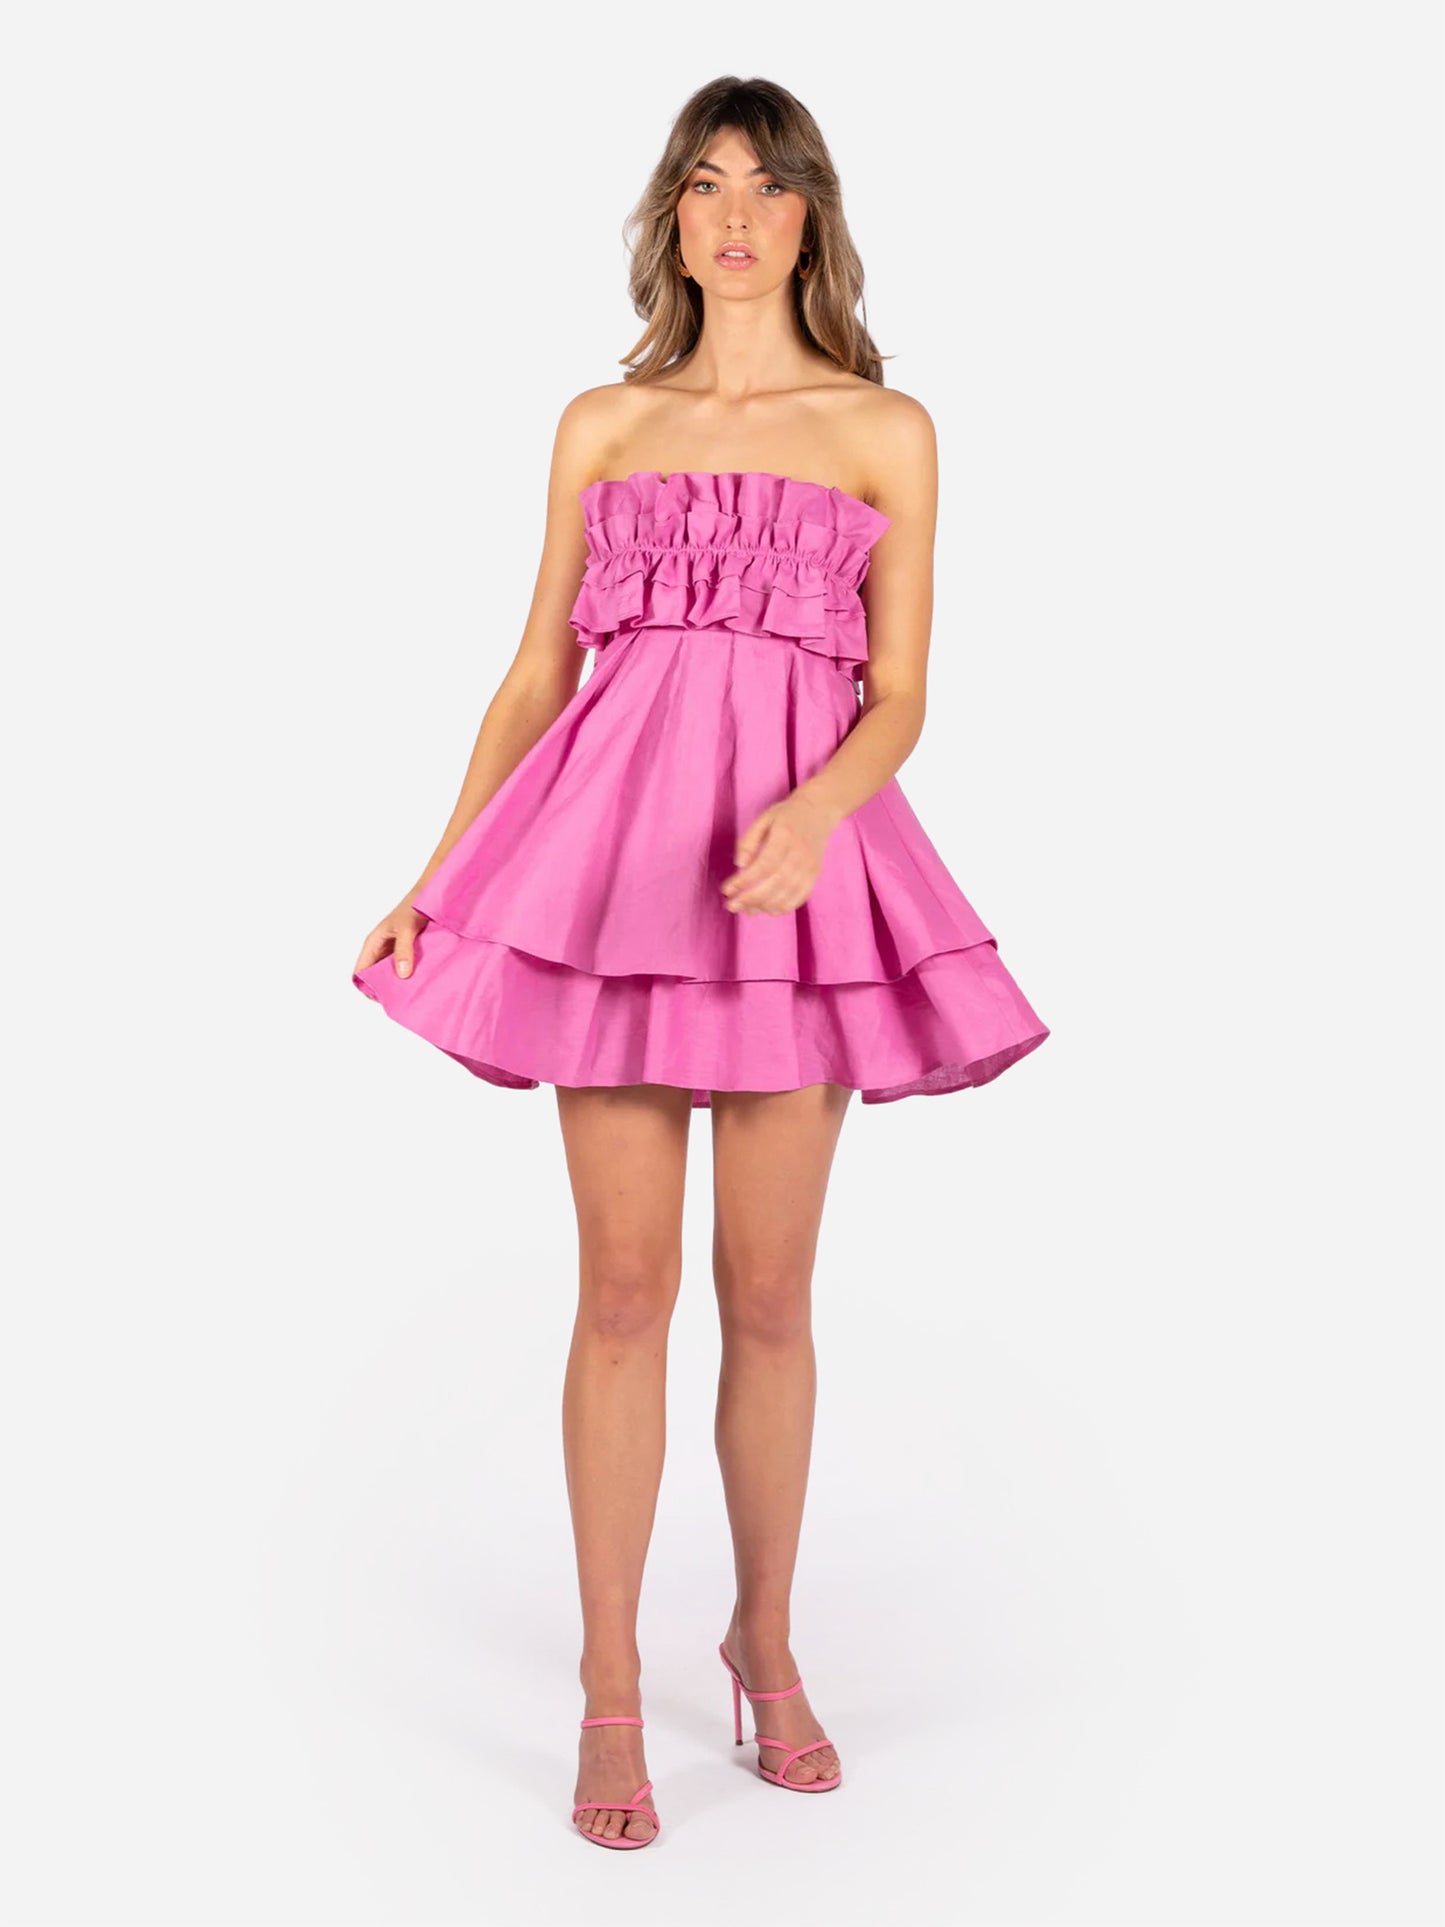 Aureta Women's Penelope Mini Dress